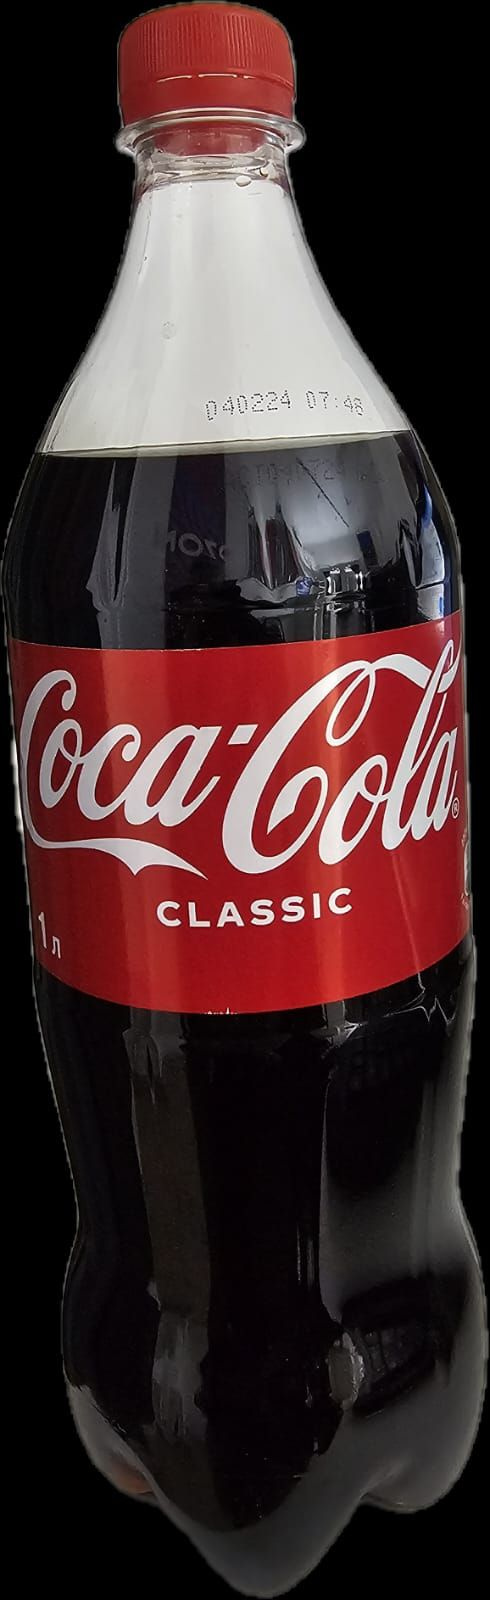 Coca-Cola производится из натуральных ингредиентов, не содержит ГМО, консервантов, глютена, лактозы и хлора. Он содержит сахар, натуральные красители и натуральные ароматизаторы. Coca-Cola имеет высокую степень газирования и приятный пряный вкус. Этот напиток отлично подходит для утоления жажды в жаркую погоду.